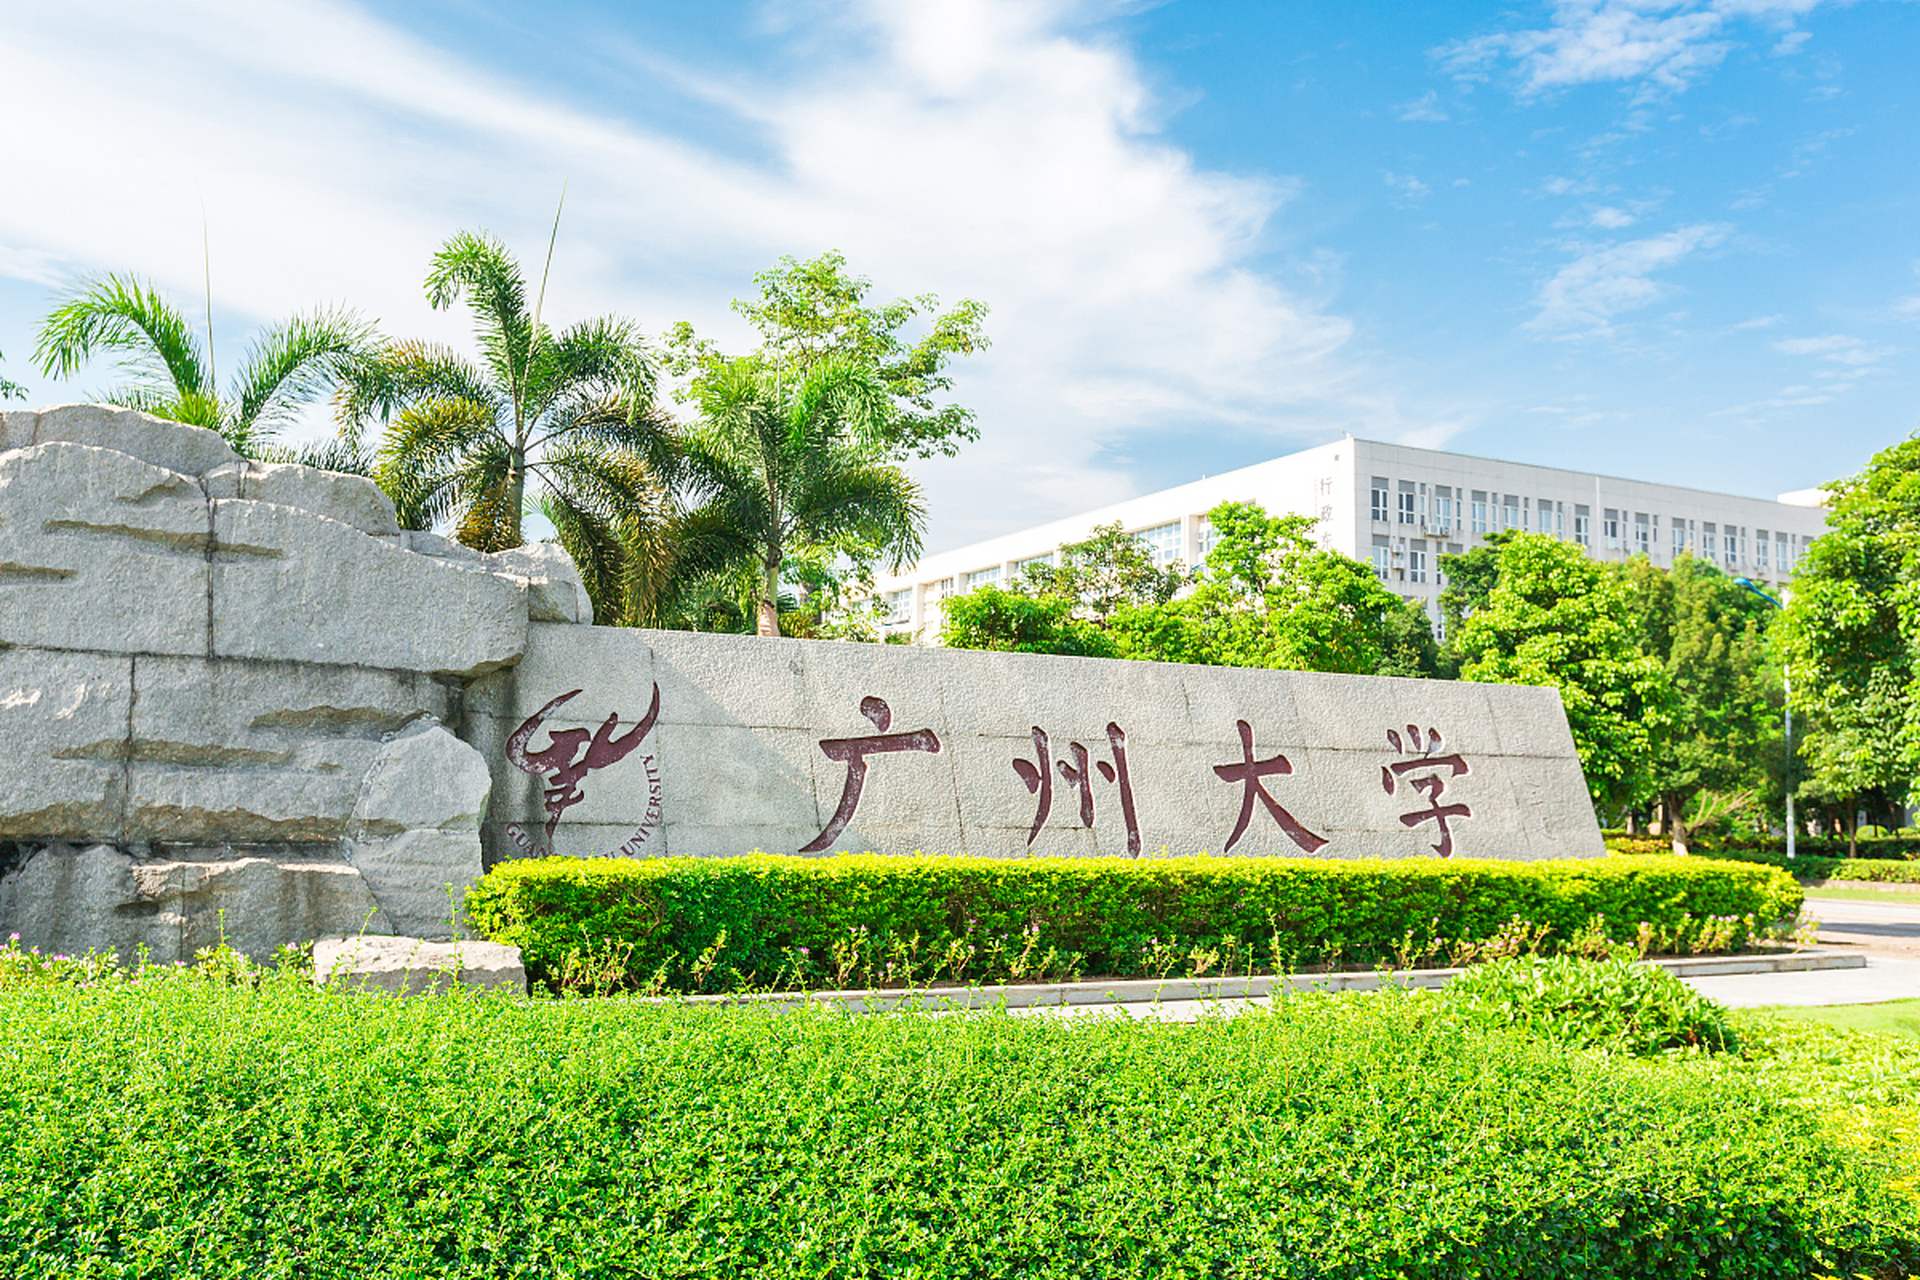 广州大学是一所综合性大学,拥有丰富的学术资源和优秀的师资力量,其